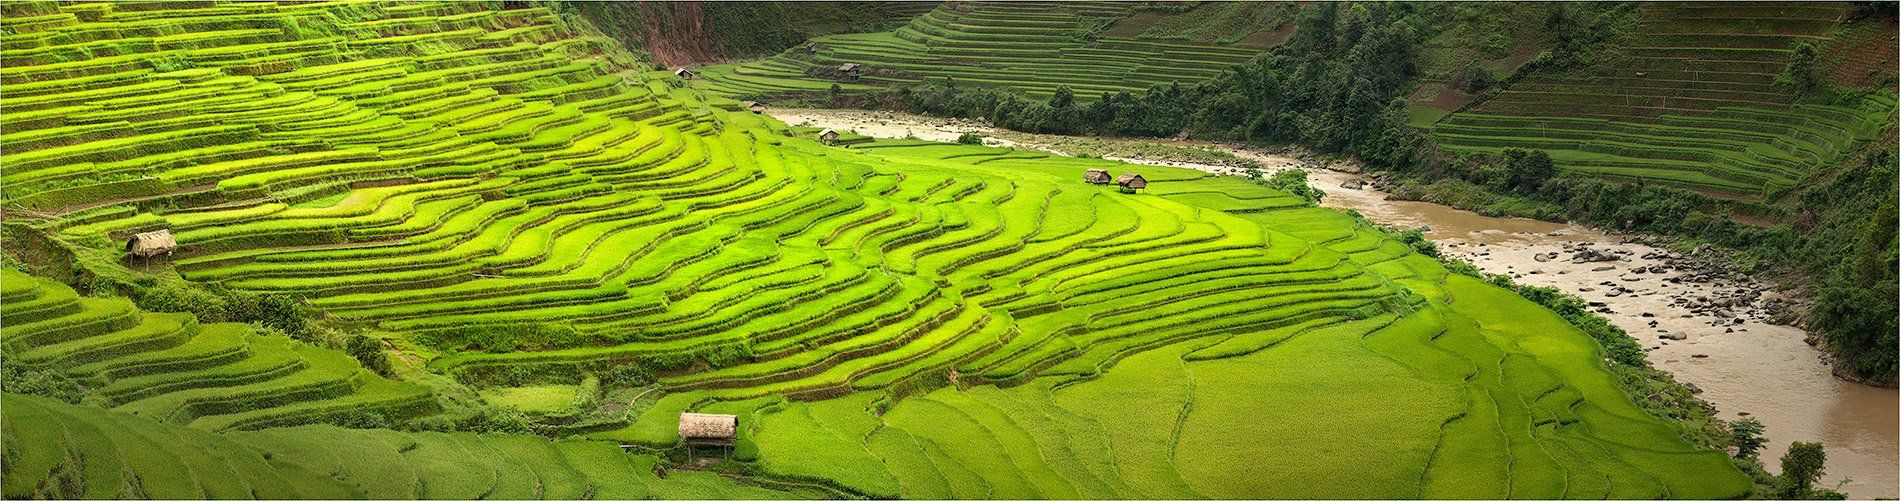 вьетнам, рисовые, террасы, Yury Pustovoy (artphoto-tour.com)